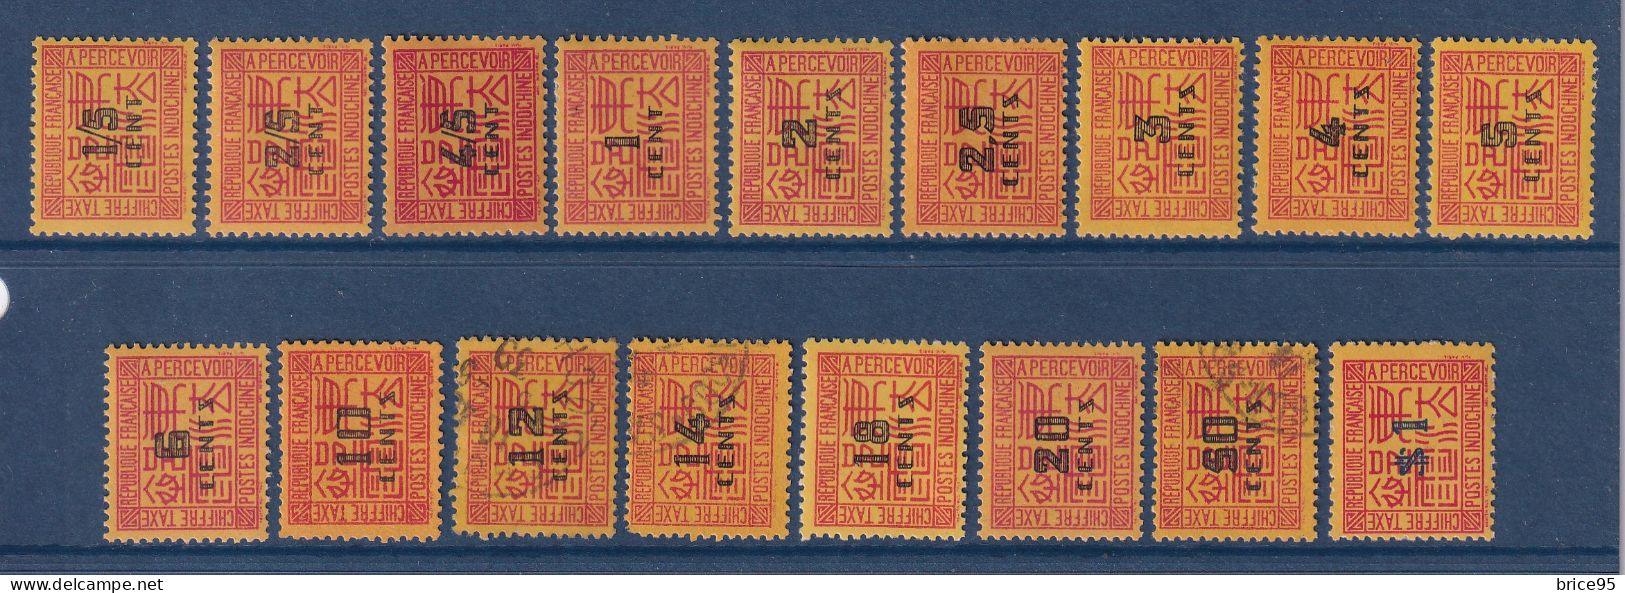 Indochine - Taxe - YT N° 57 à 73 - Neuf Avec Charnière Et Oblitéré - Manque N° 74 - 1931 à 1941 - Portomarken